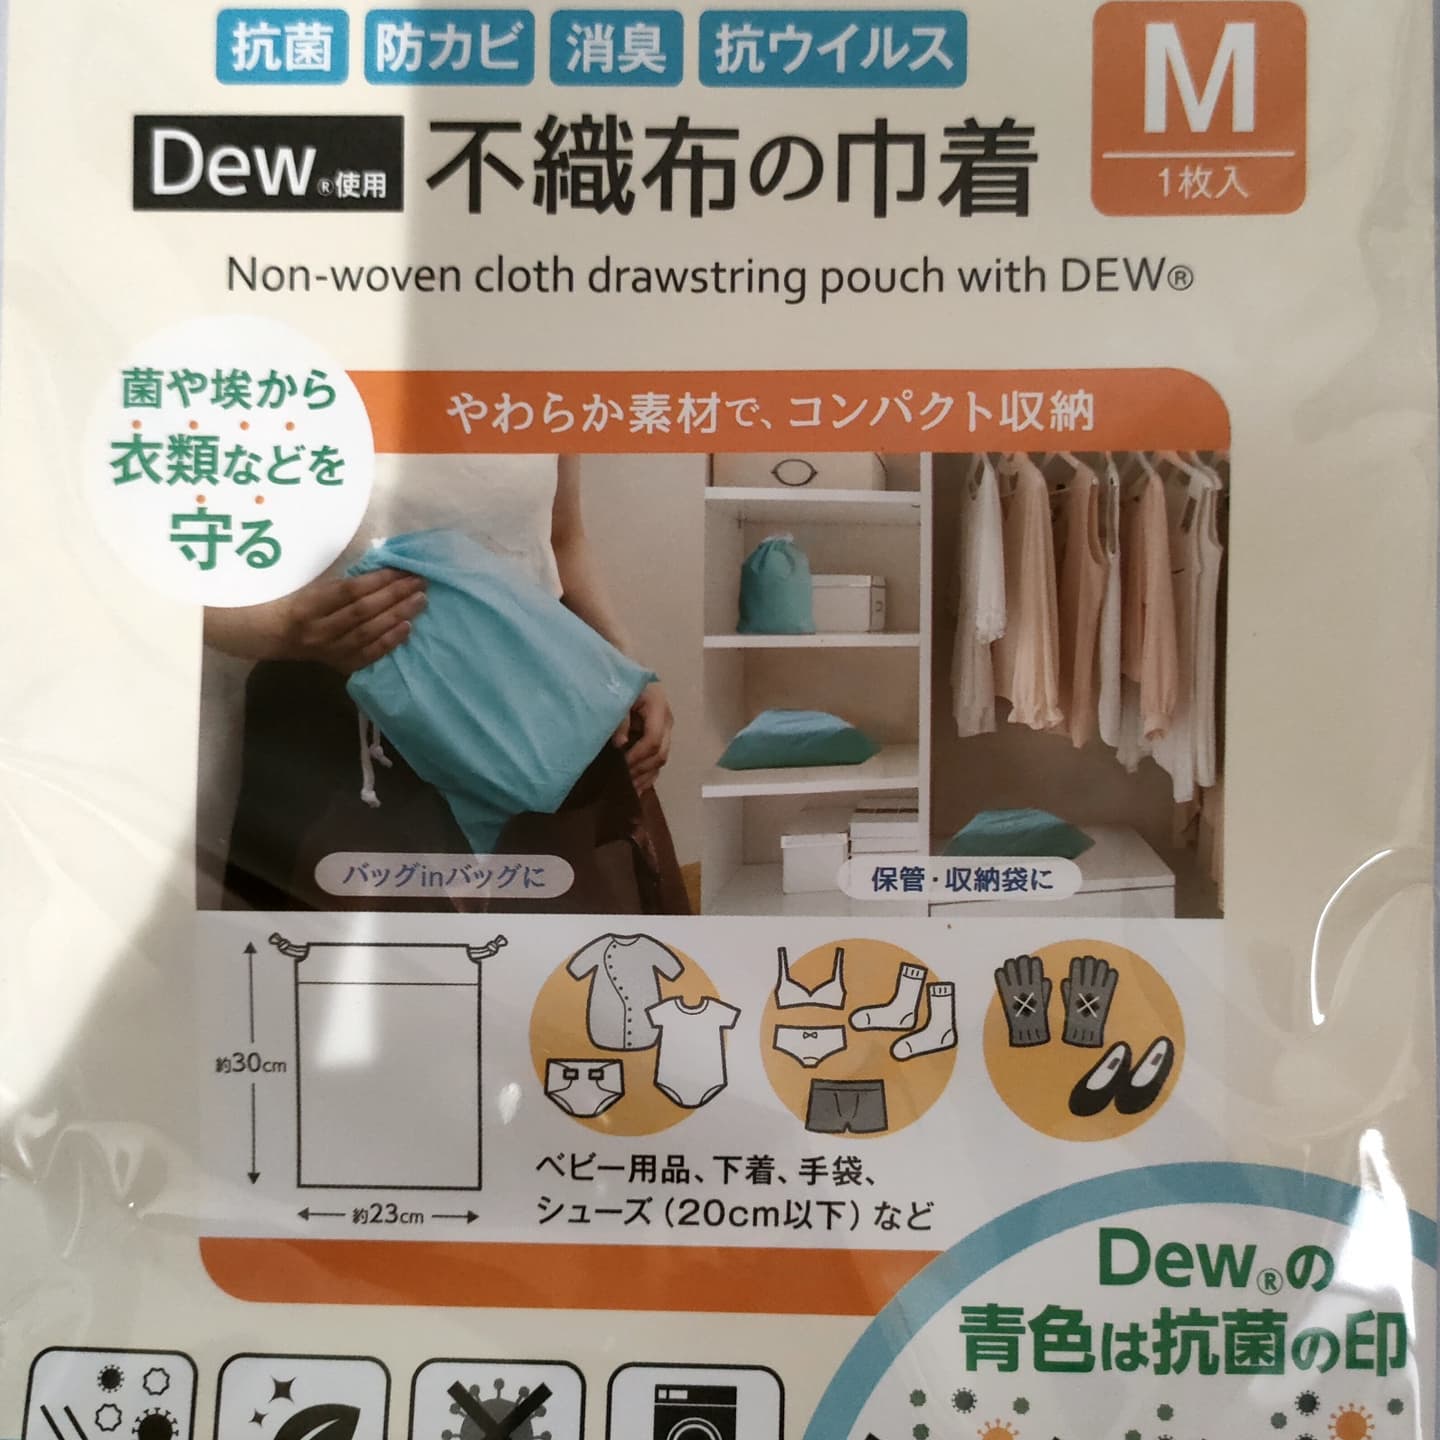 口コミ投稿：モニターのご報告♡KAWAGUCHI様よりDew(R)使用 不織布の巾着 Mをモニターさせて頂きま…